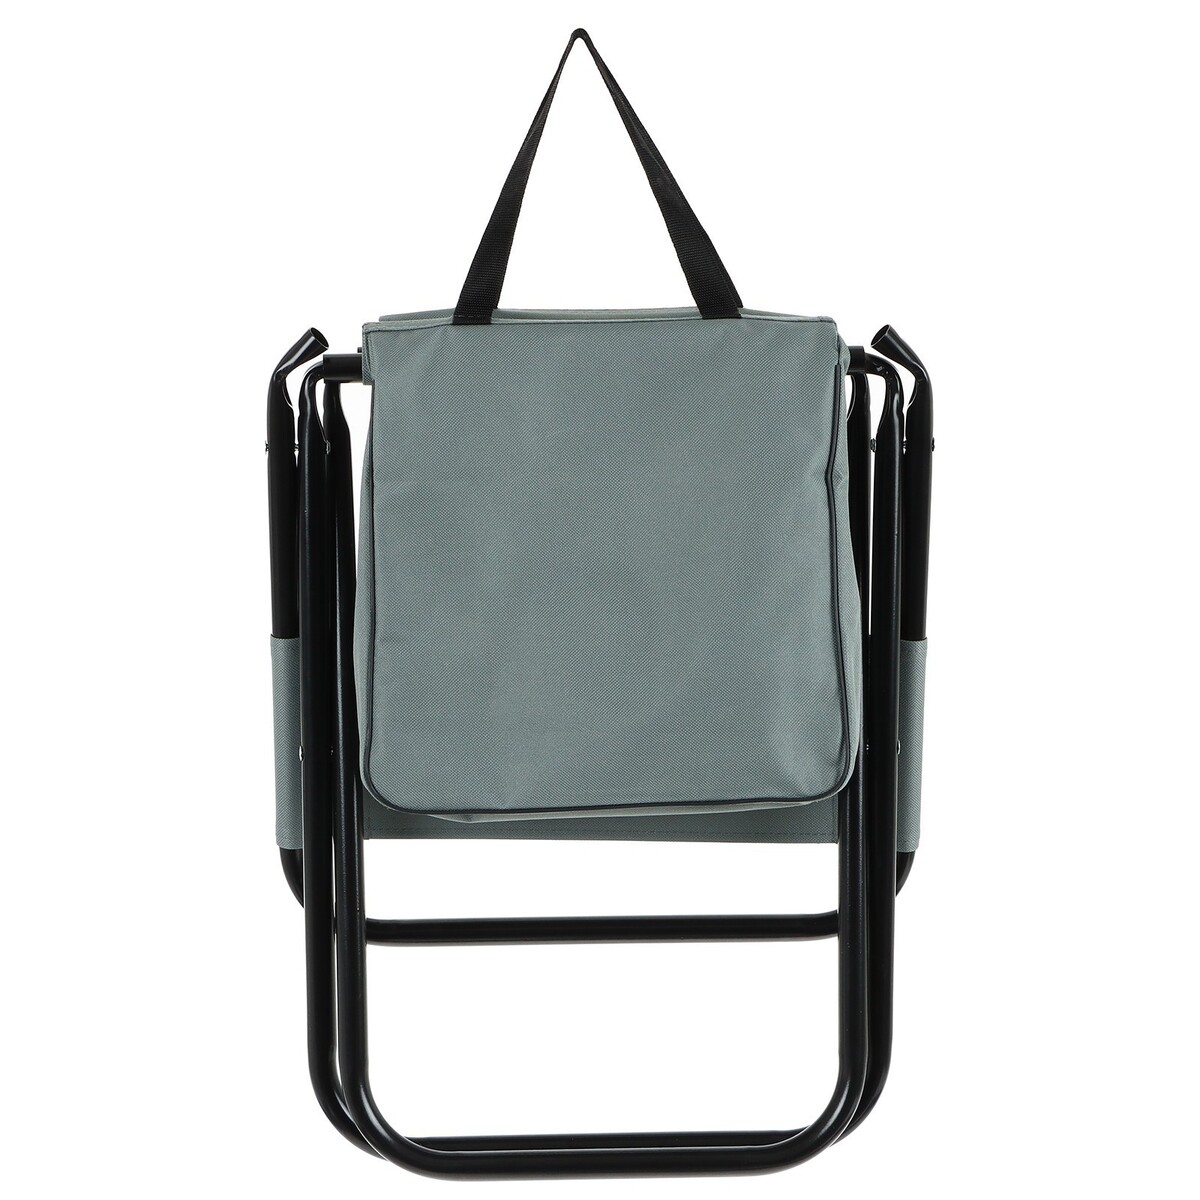 фото Стул туристический maclay, с сумкой, р. 24х26х60 см, до 60 кг, цвет серый